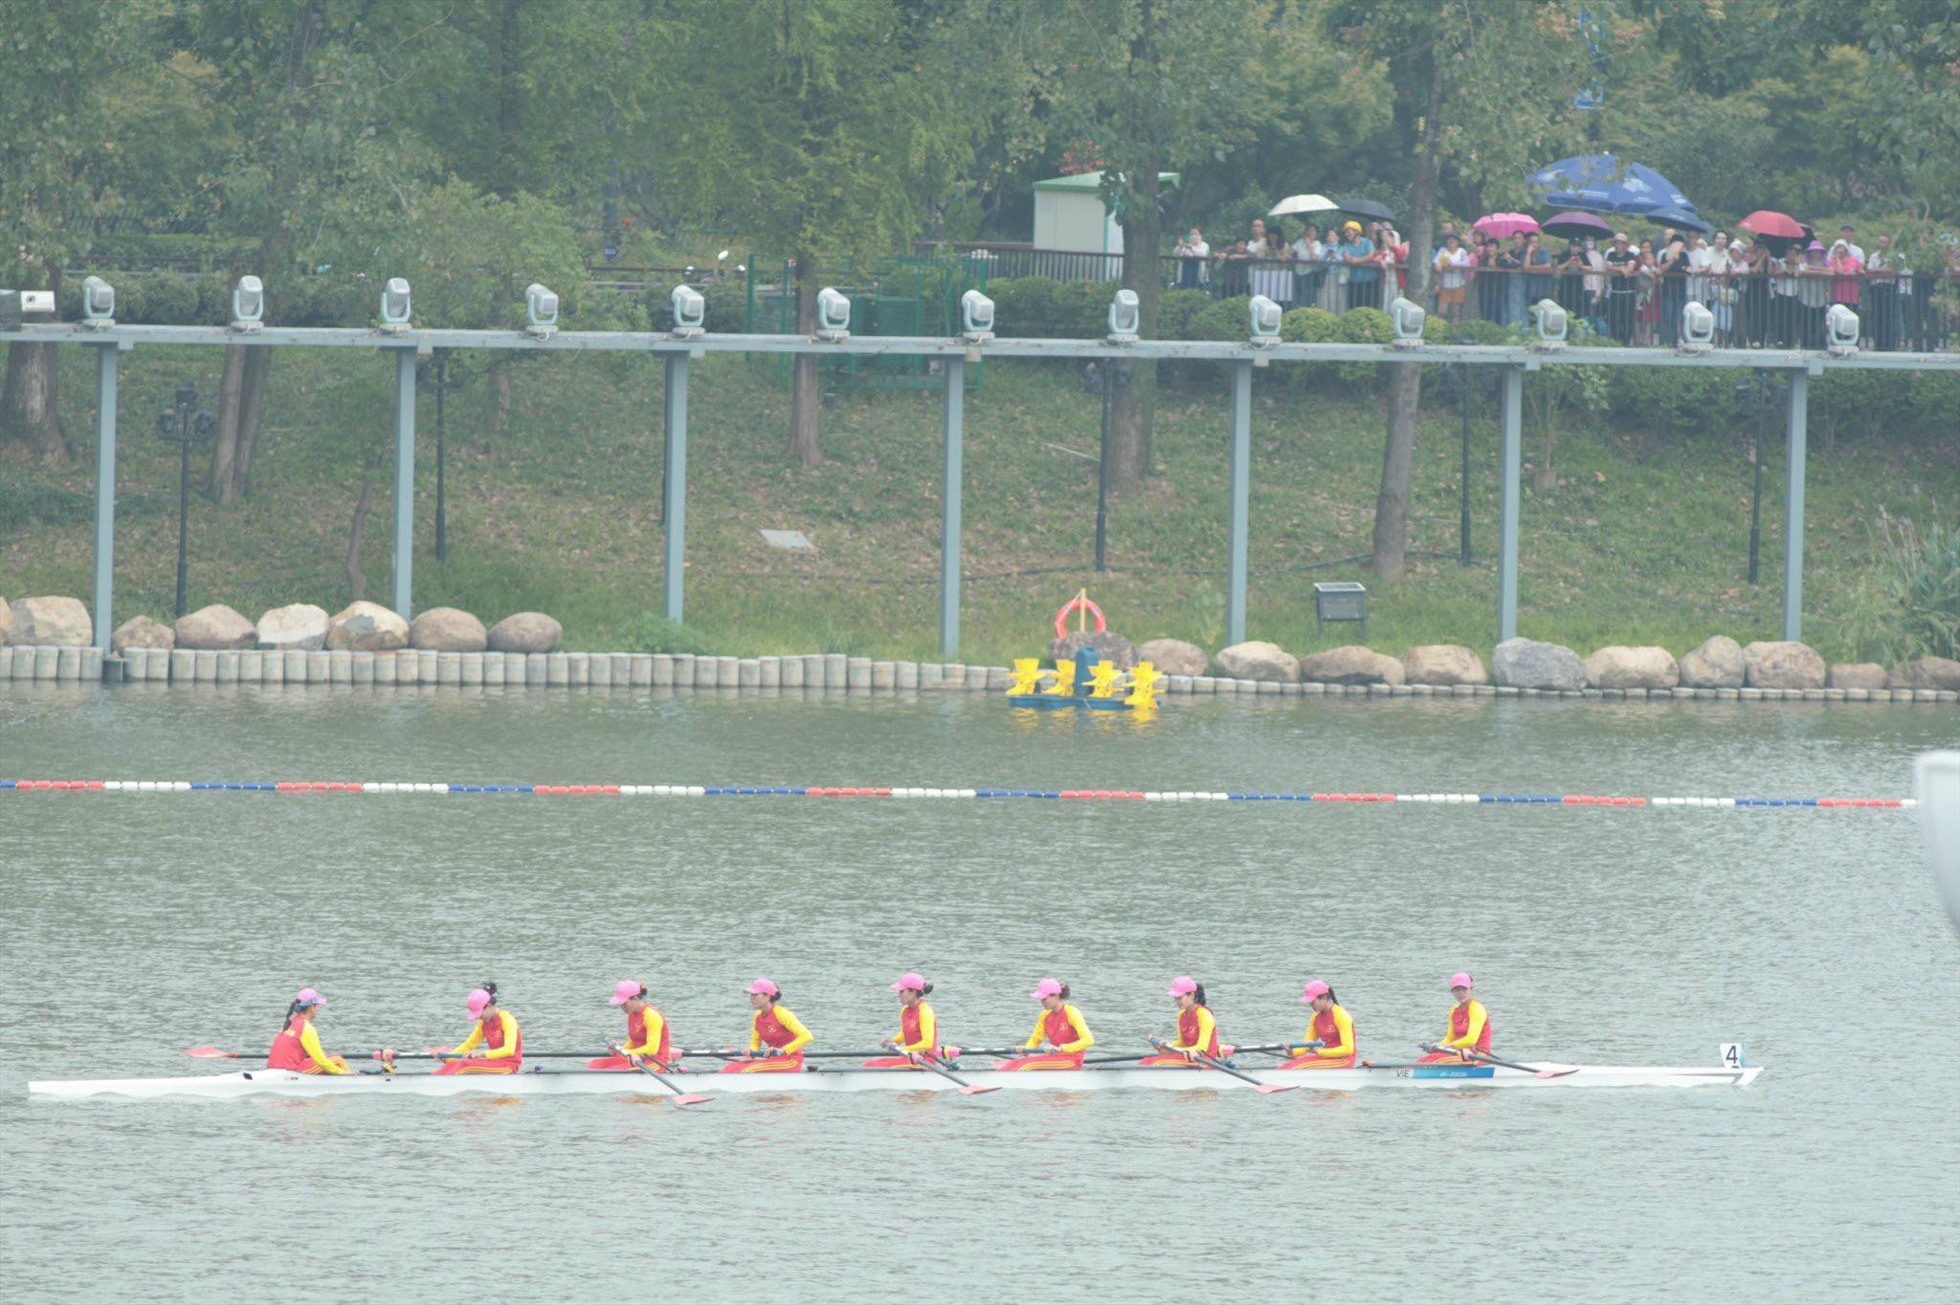 Các vận động viên giành huy chương đồng rowing nội dung thuyền 8 nữ. Ảnh: Bùi Lượng